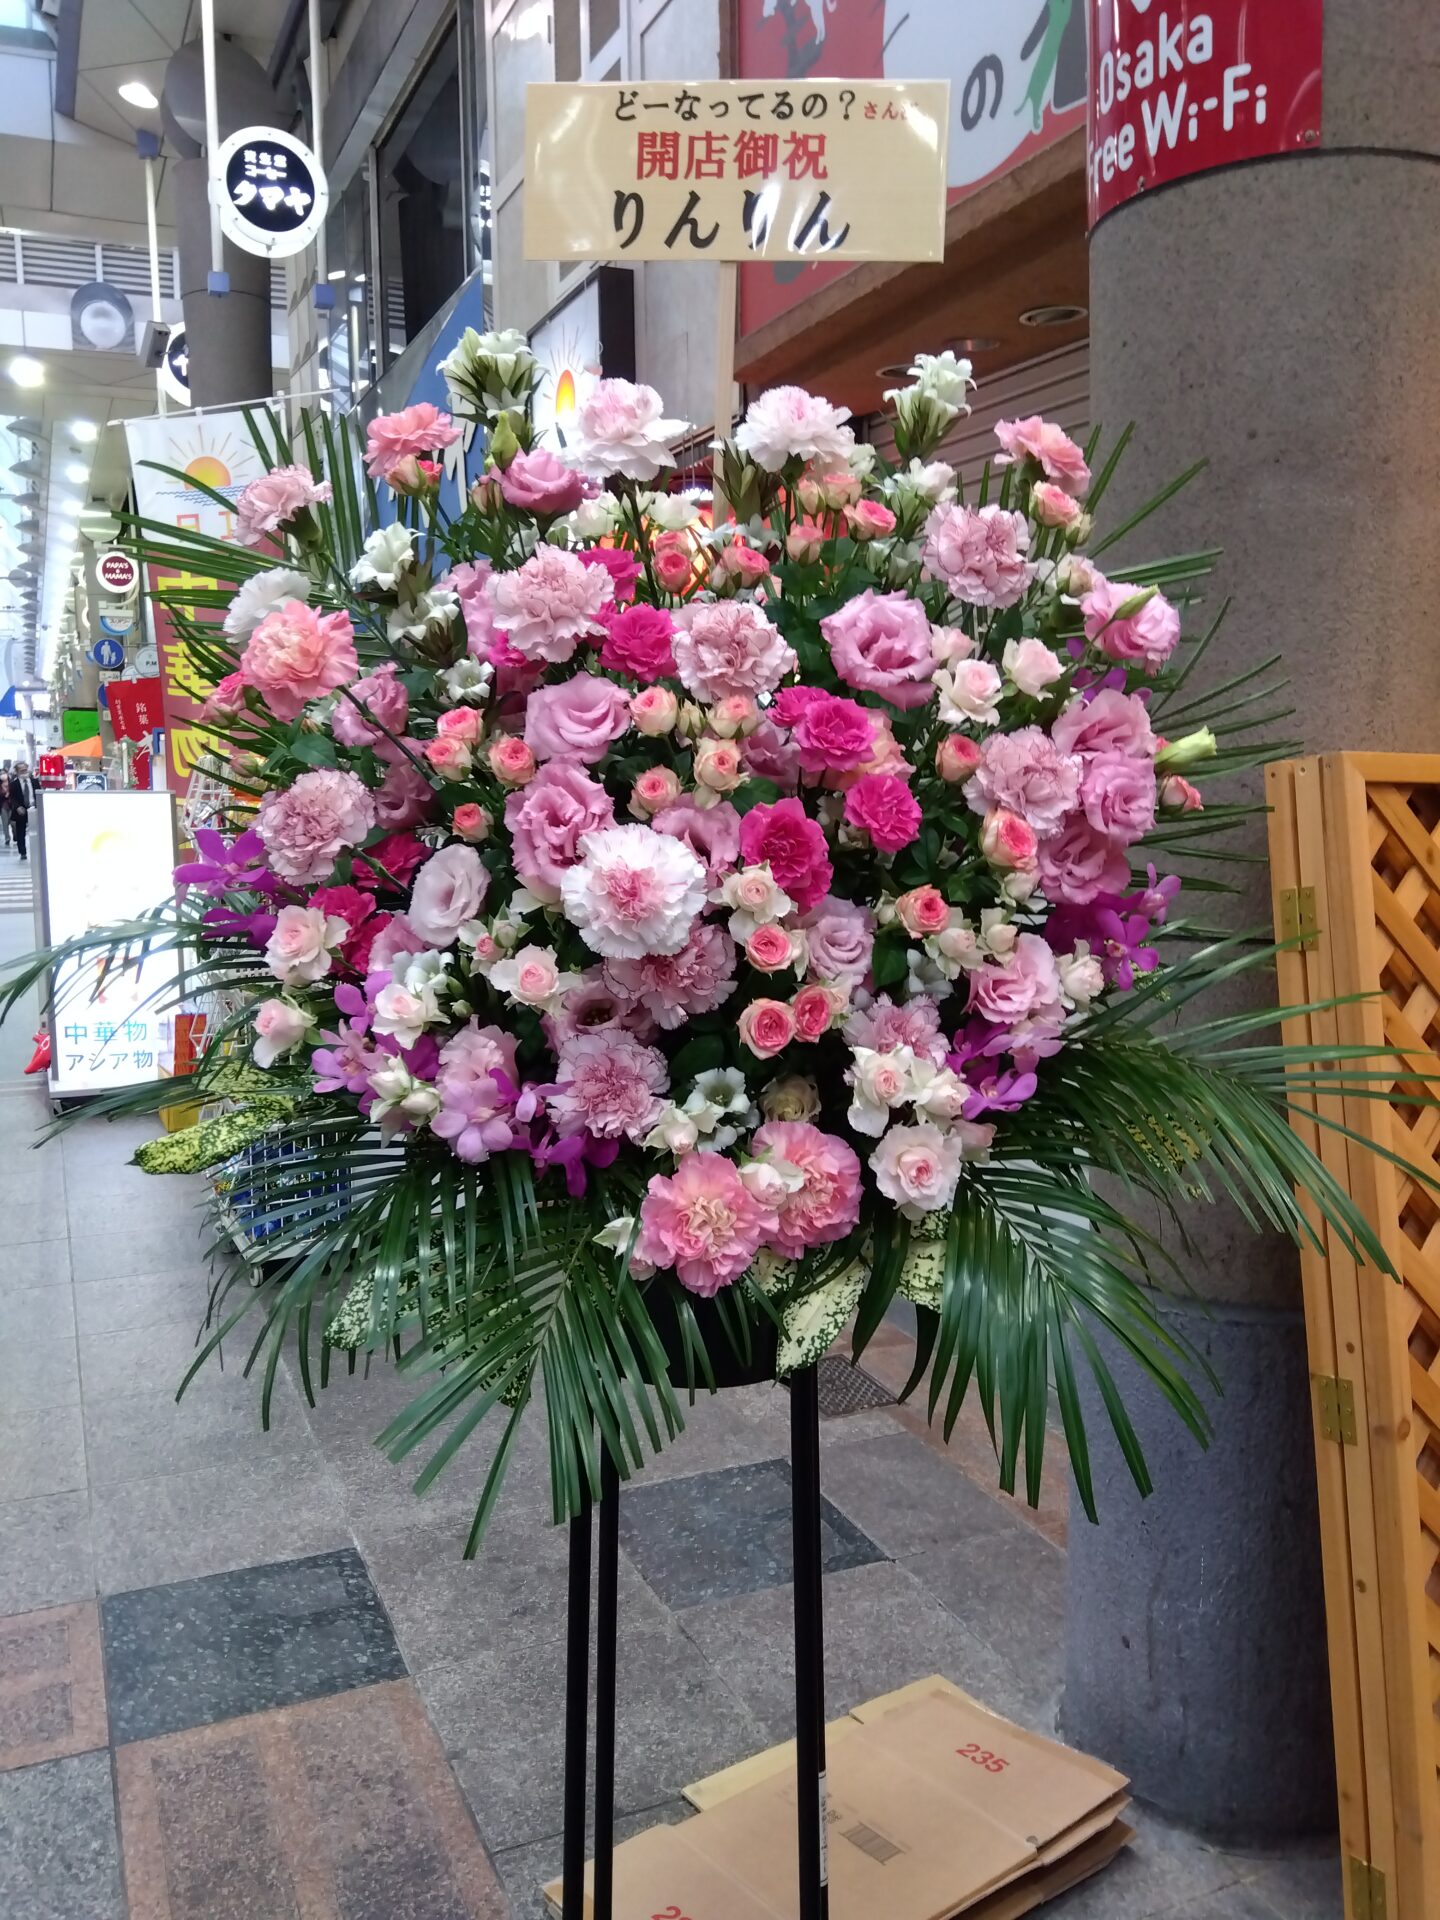 淀川区 十三本町へドーナツ屋さんの開店お祝いのスタンド花